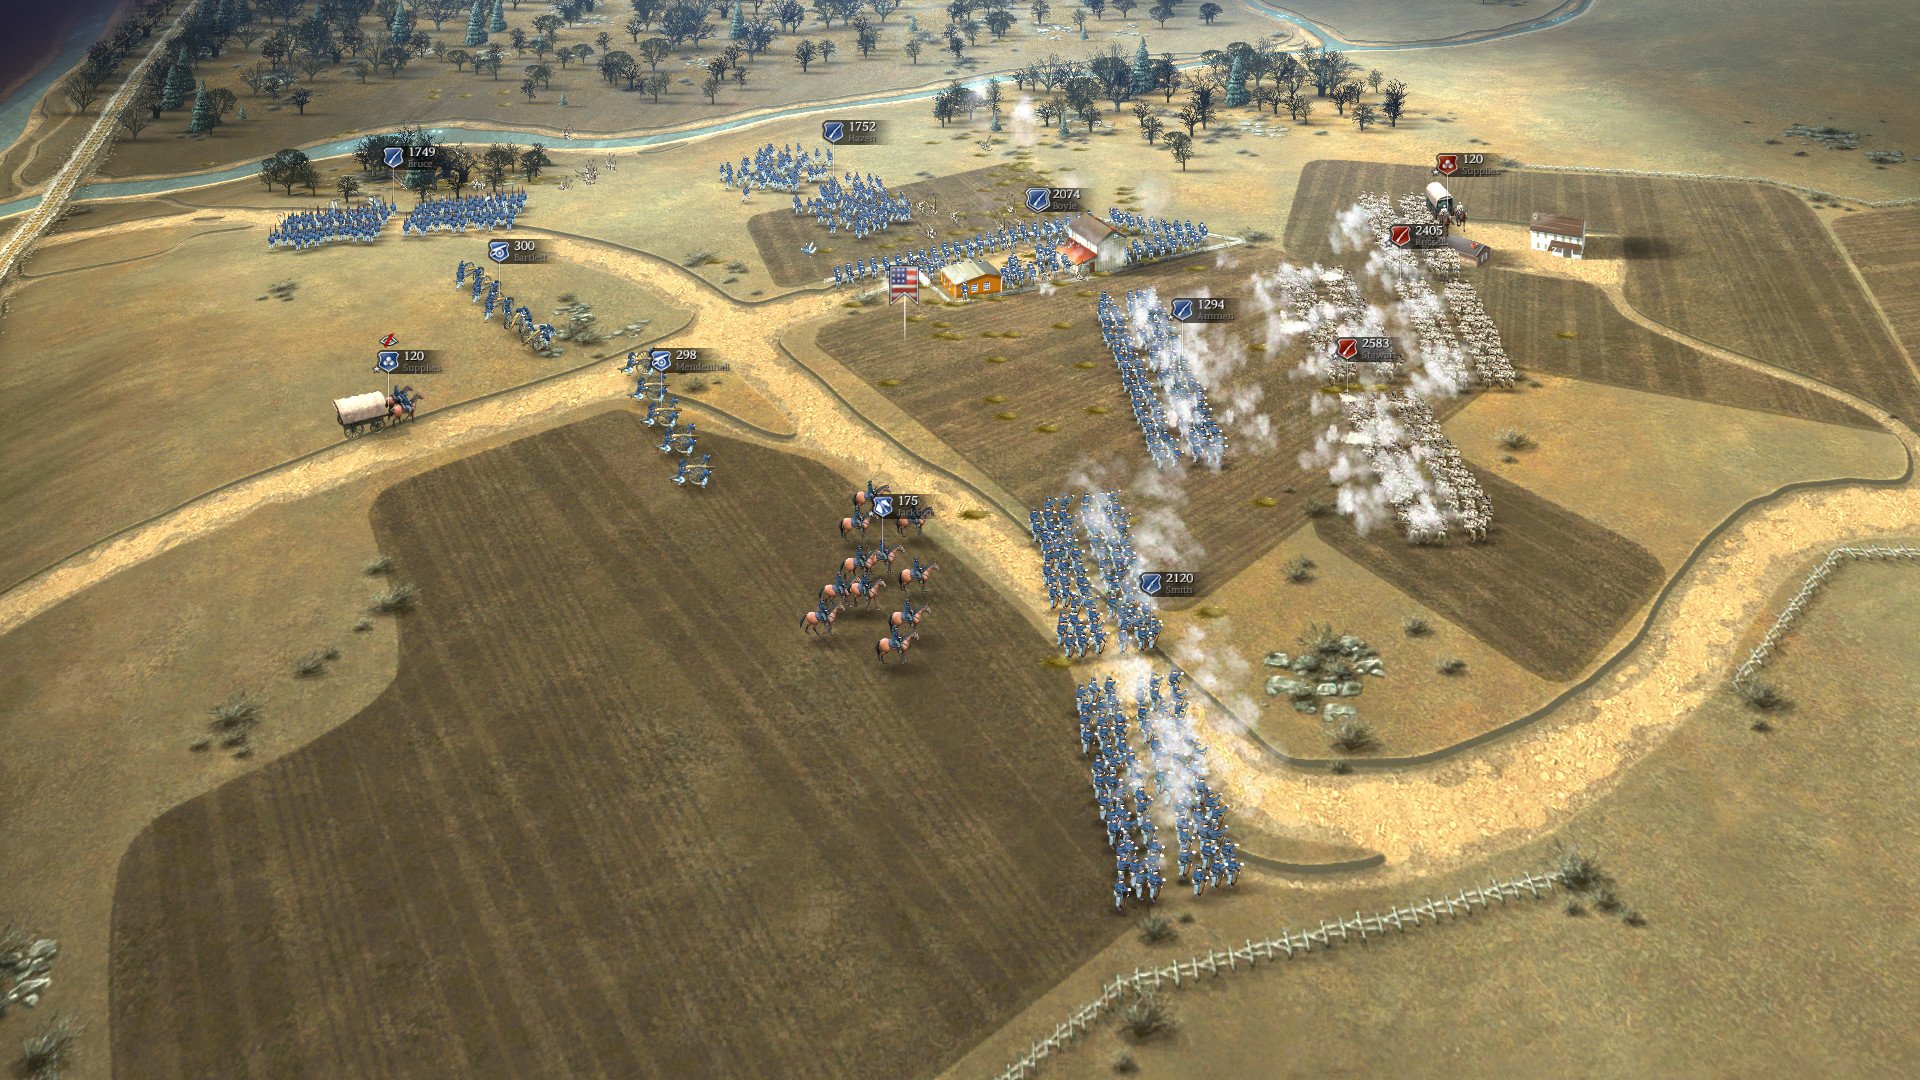 Ultimate General: Civil War — гайд по стратегии и тактике